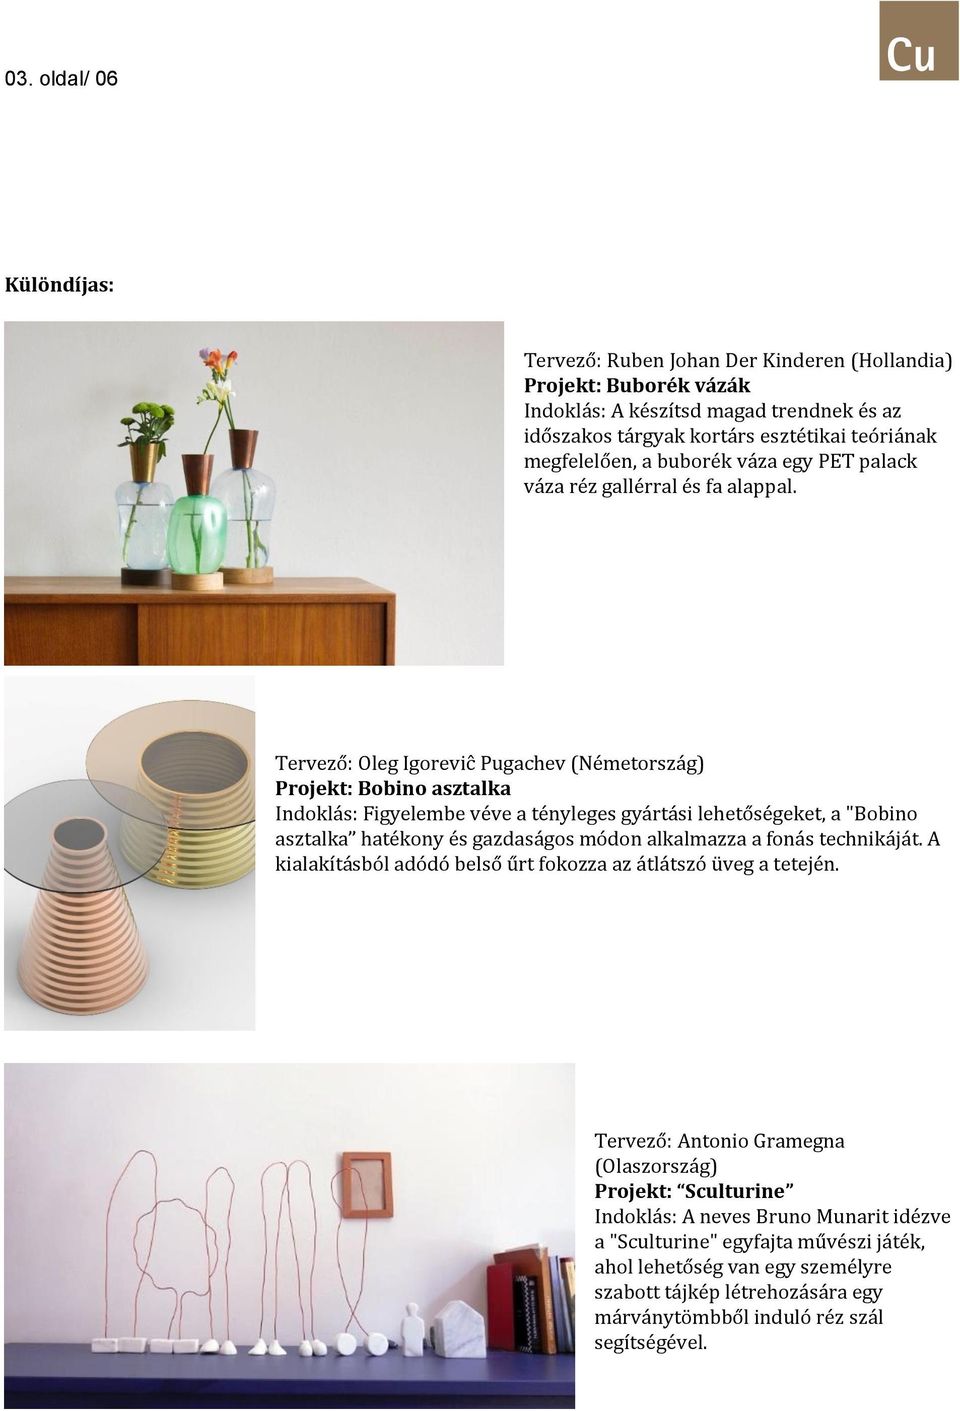 Tervező: Oleg Igoreviĉ Pugachev (Németország) Projekt: Bobino asztalka Indoklás: Figyelembe véve a tényleges gyártási lehetőségeket, a "Bobino asztalka hatékony és gazdaságos módon alkalmazza a